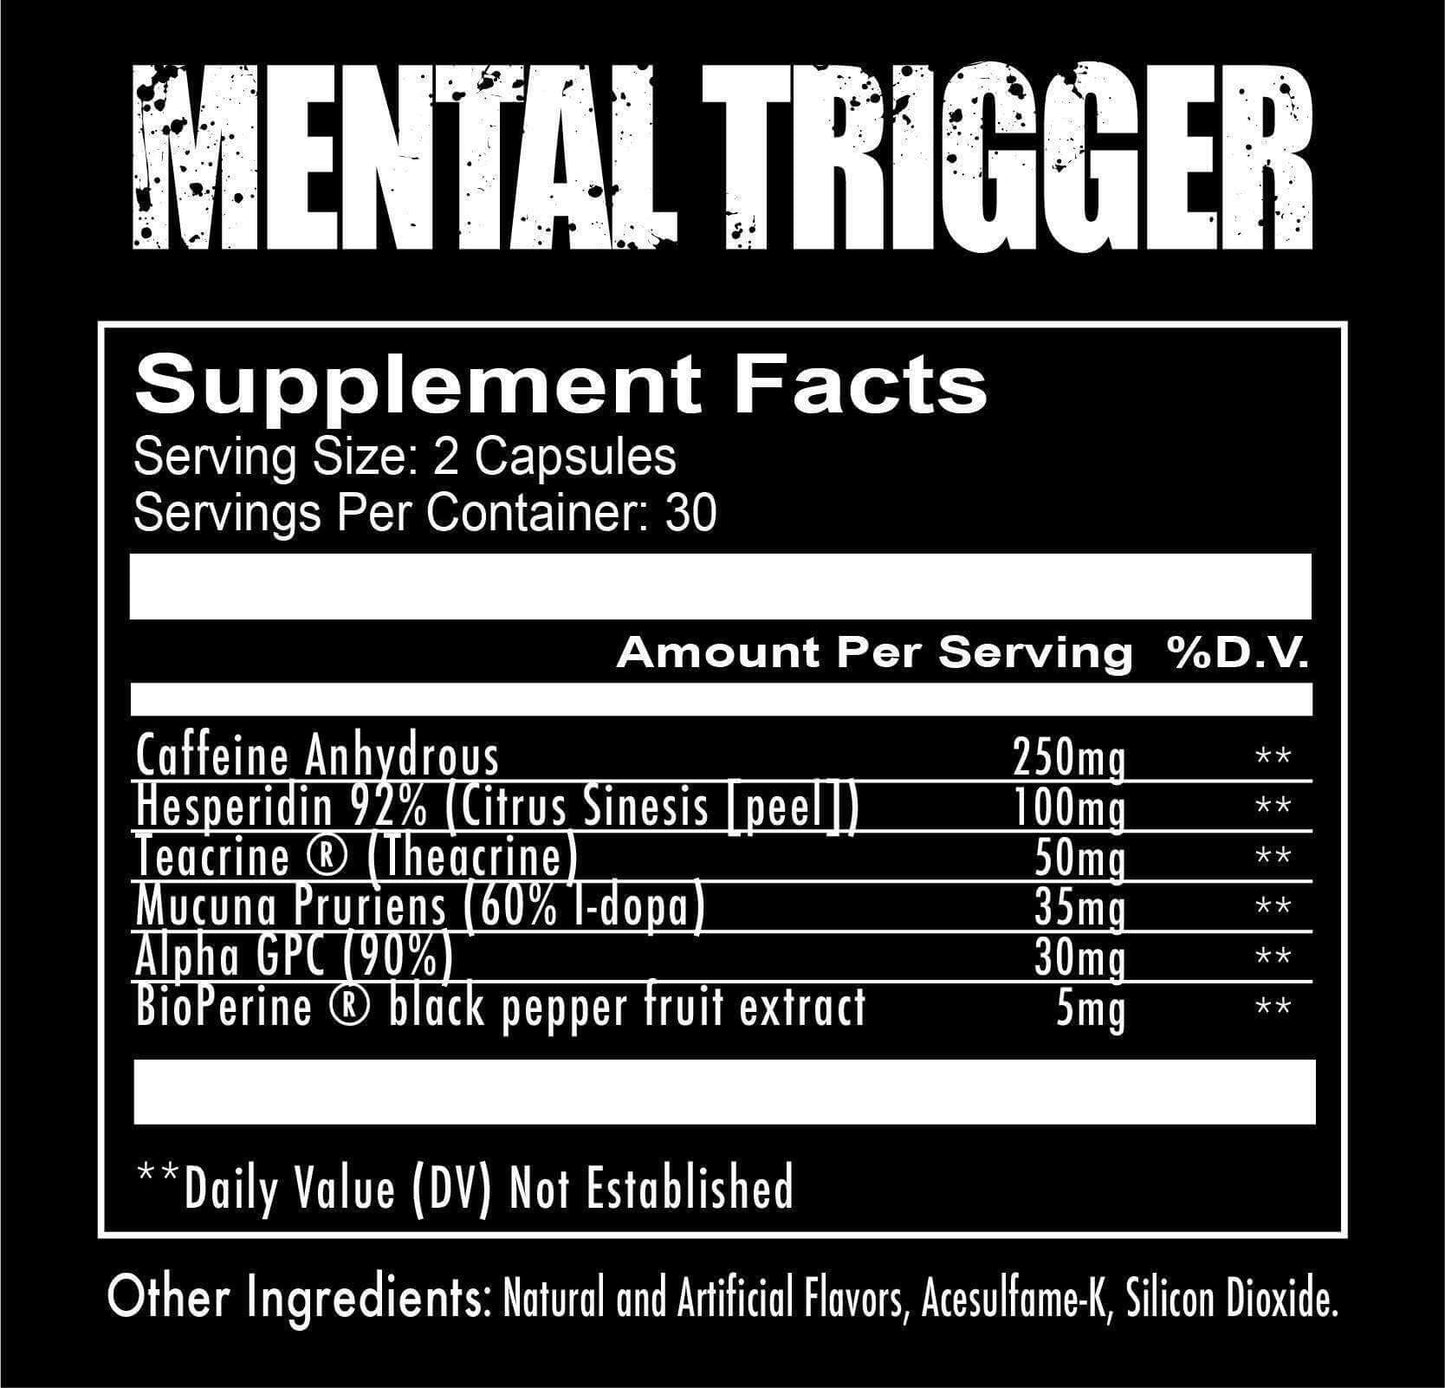 supplements-mental-trigger-focus-formula-3_spo